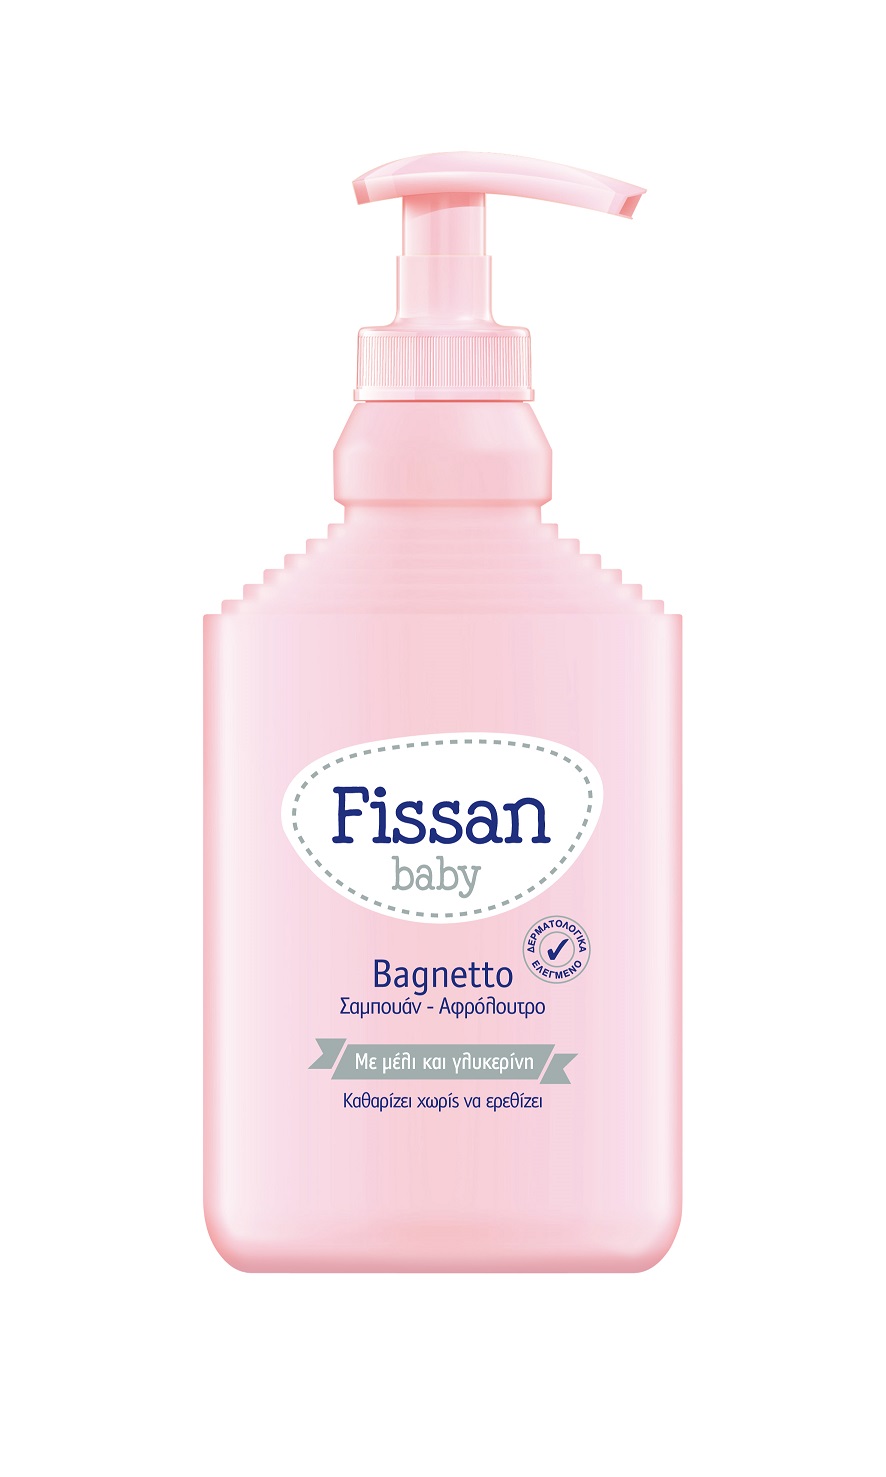 Ελαϊς-Unilever Hellas Α.Ε. Βρεφικό Σαμπουάν & Αφρόλουτρο Bagnetto Baby Fissan (500 ml)